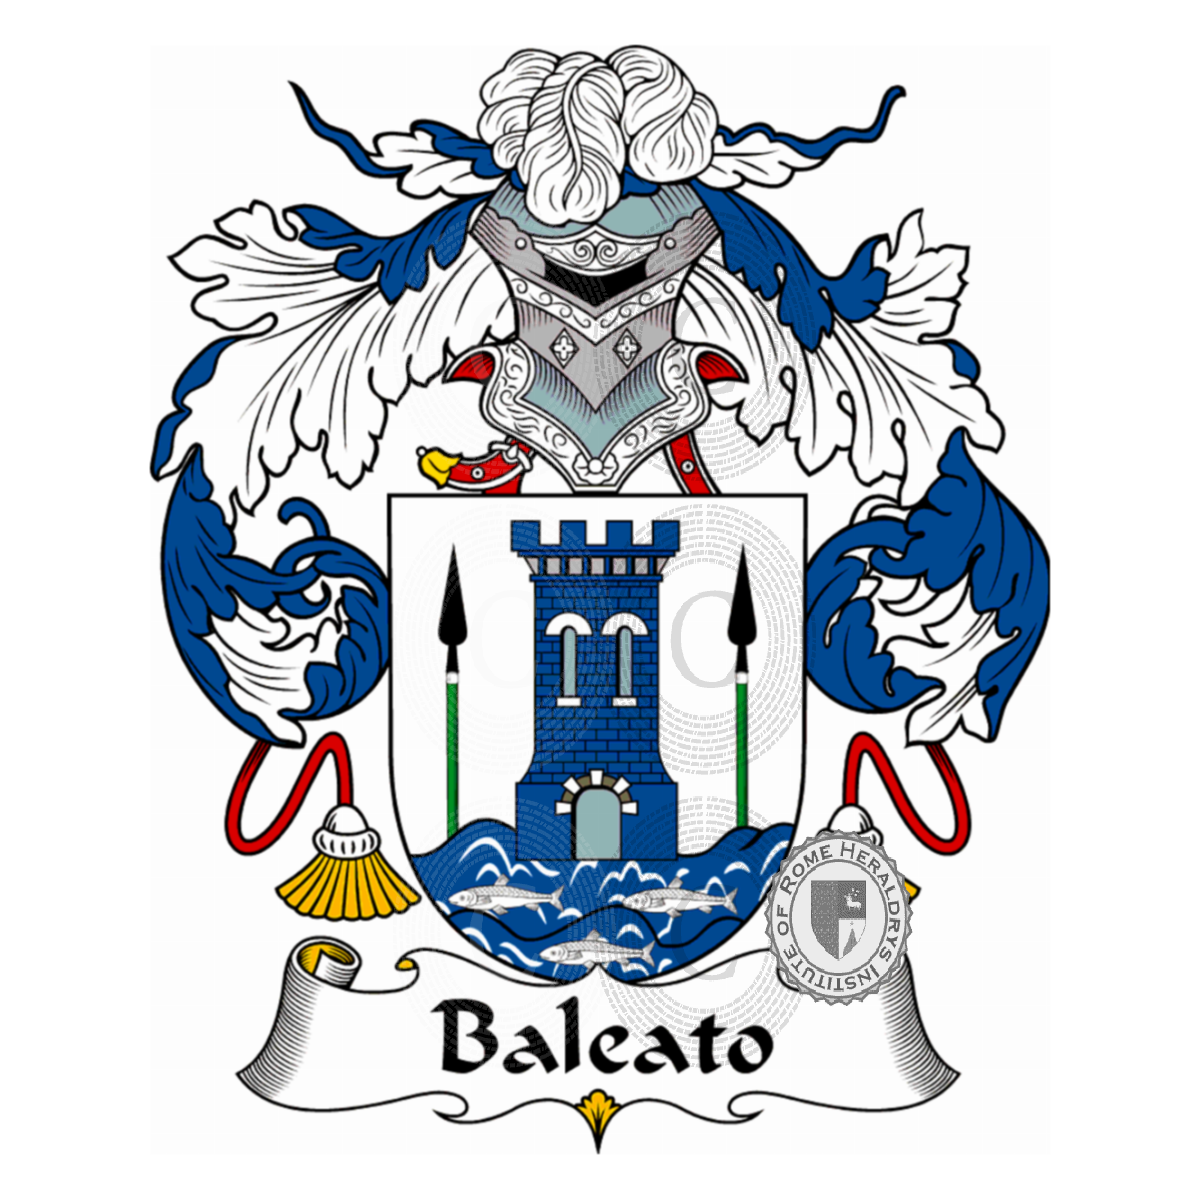 Wappen der FamilieBaleato